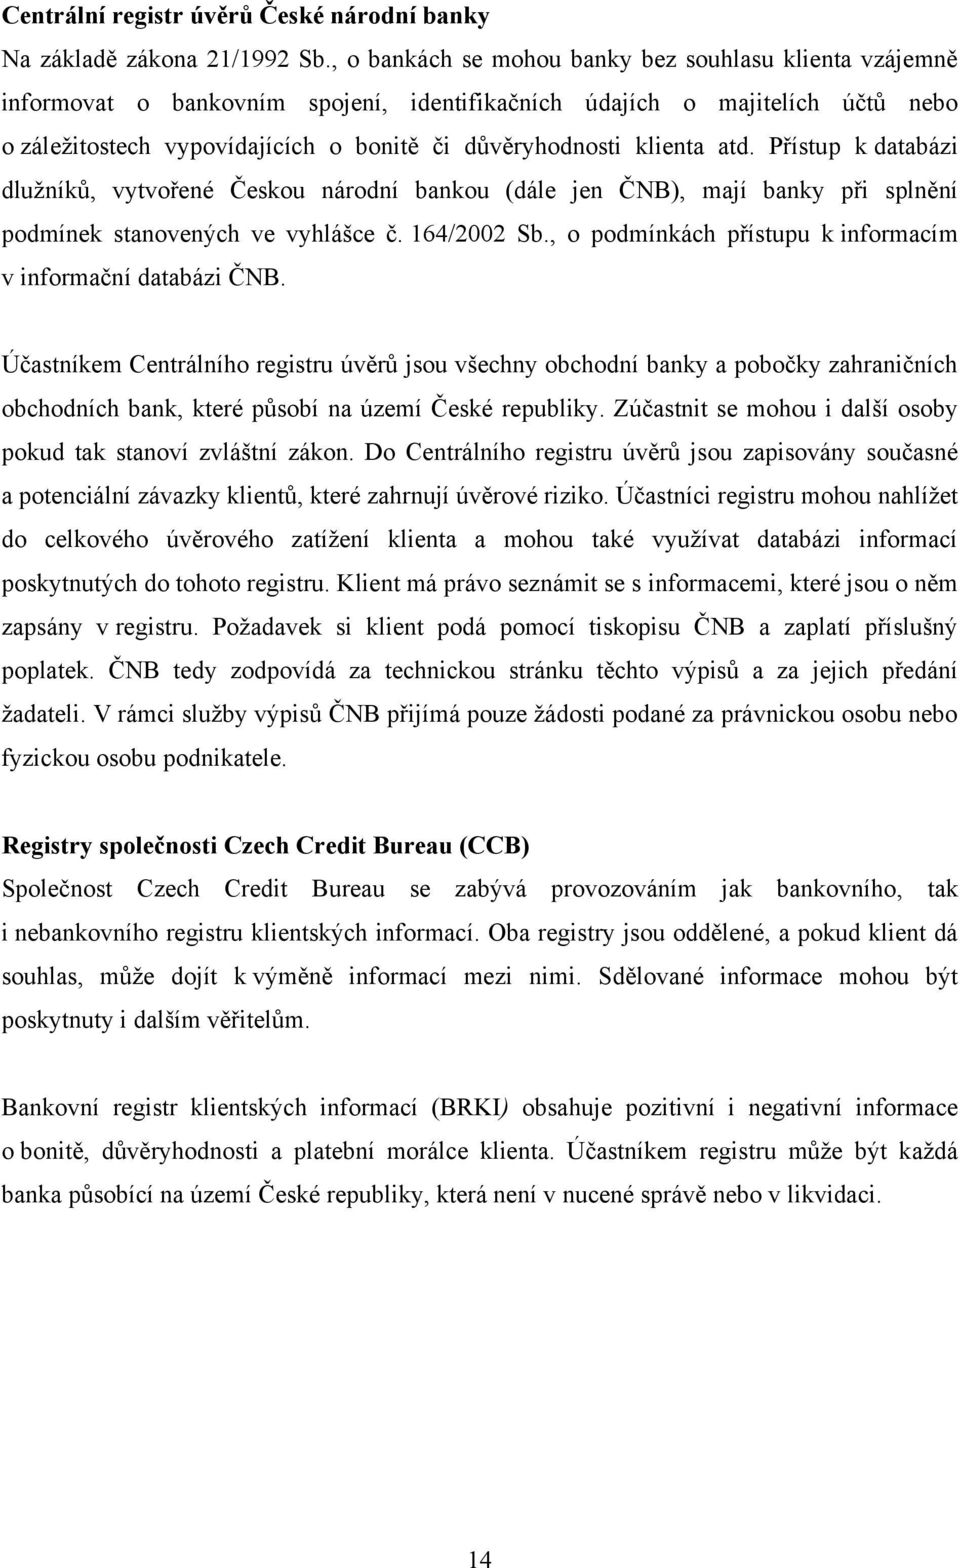 klienta atd. Přístup k databázi dluţníků, vytvořené Českou národní bankou (dále jen ČNB), mají banky při splnění podmínek stanovených ve vyhlášce č. 164/2002 Sb.